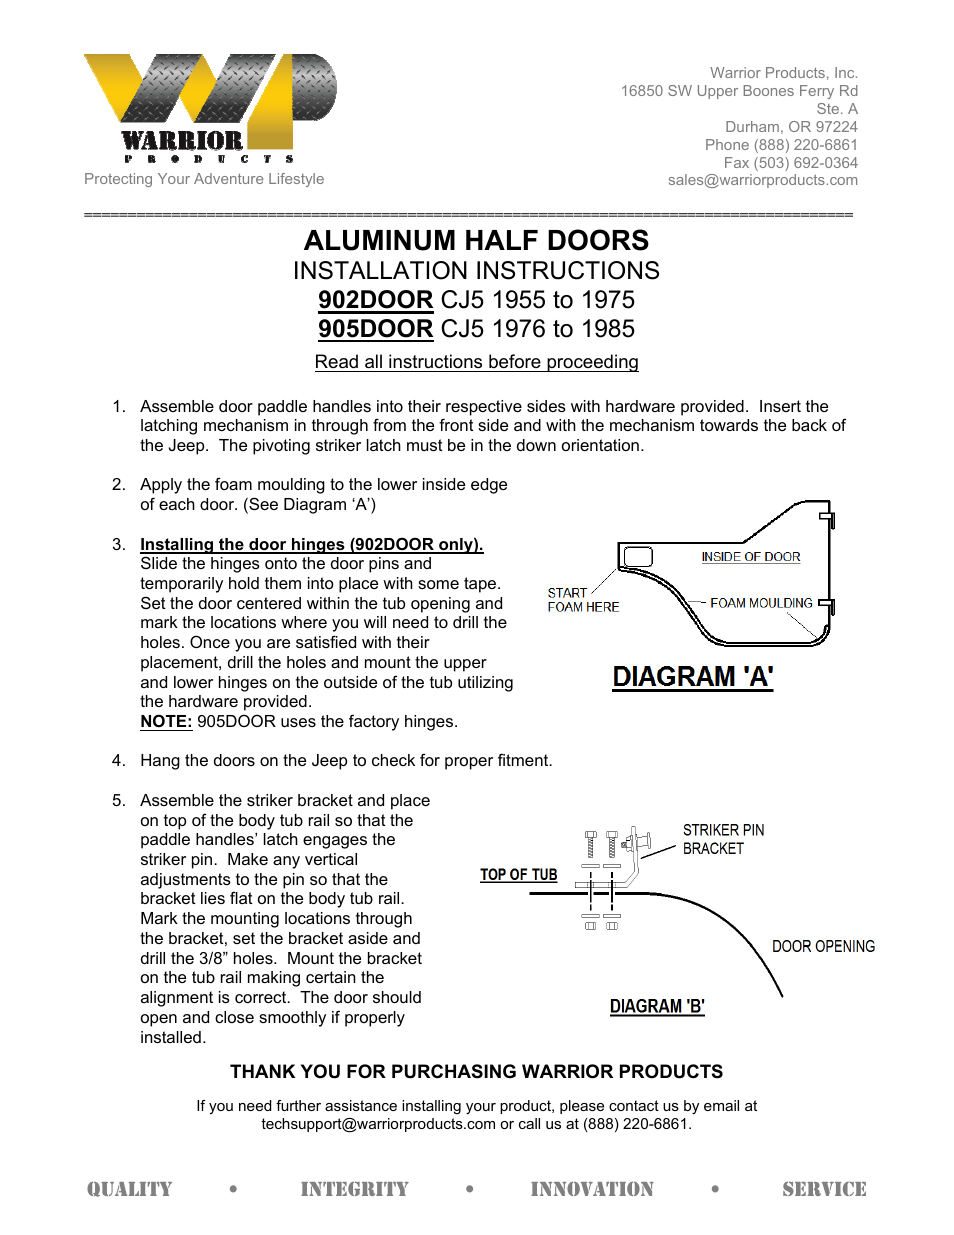 905DOOR CJ5 1976 to 1985 ALUMINUM HALF DOORS